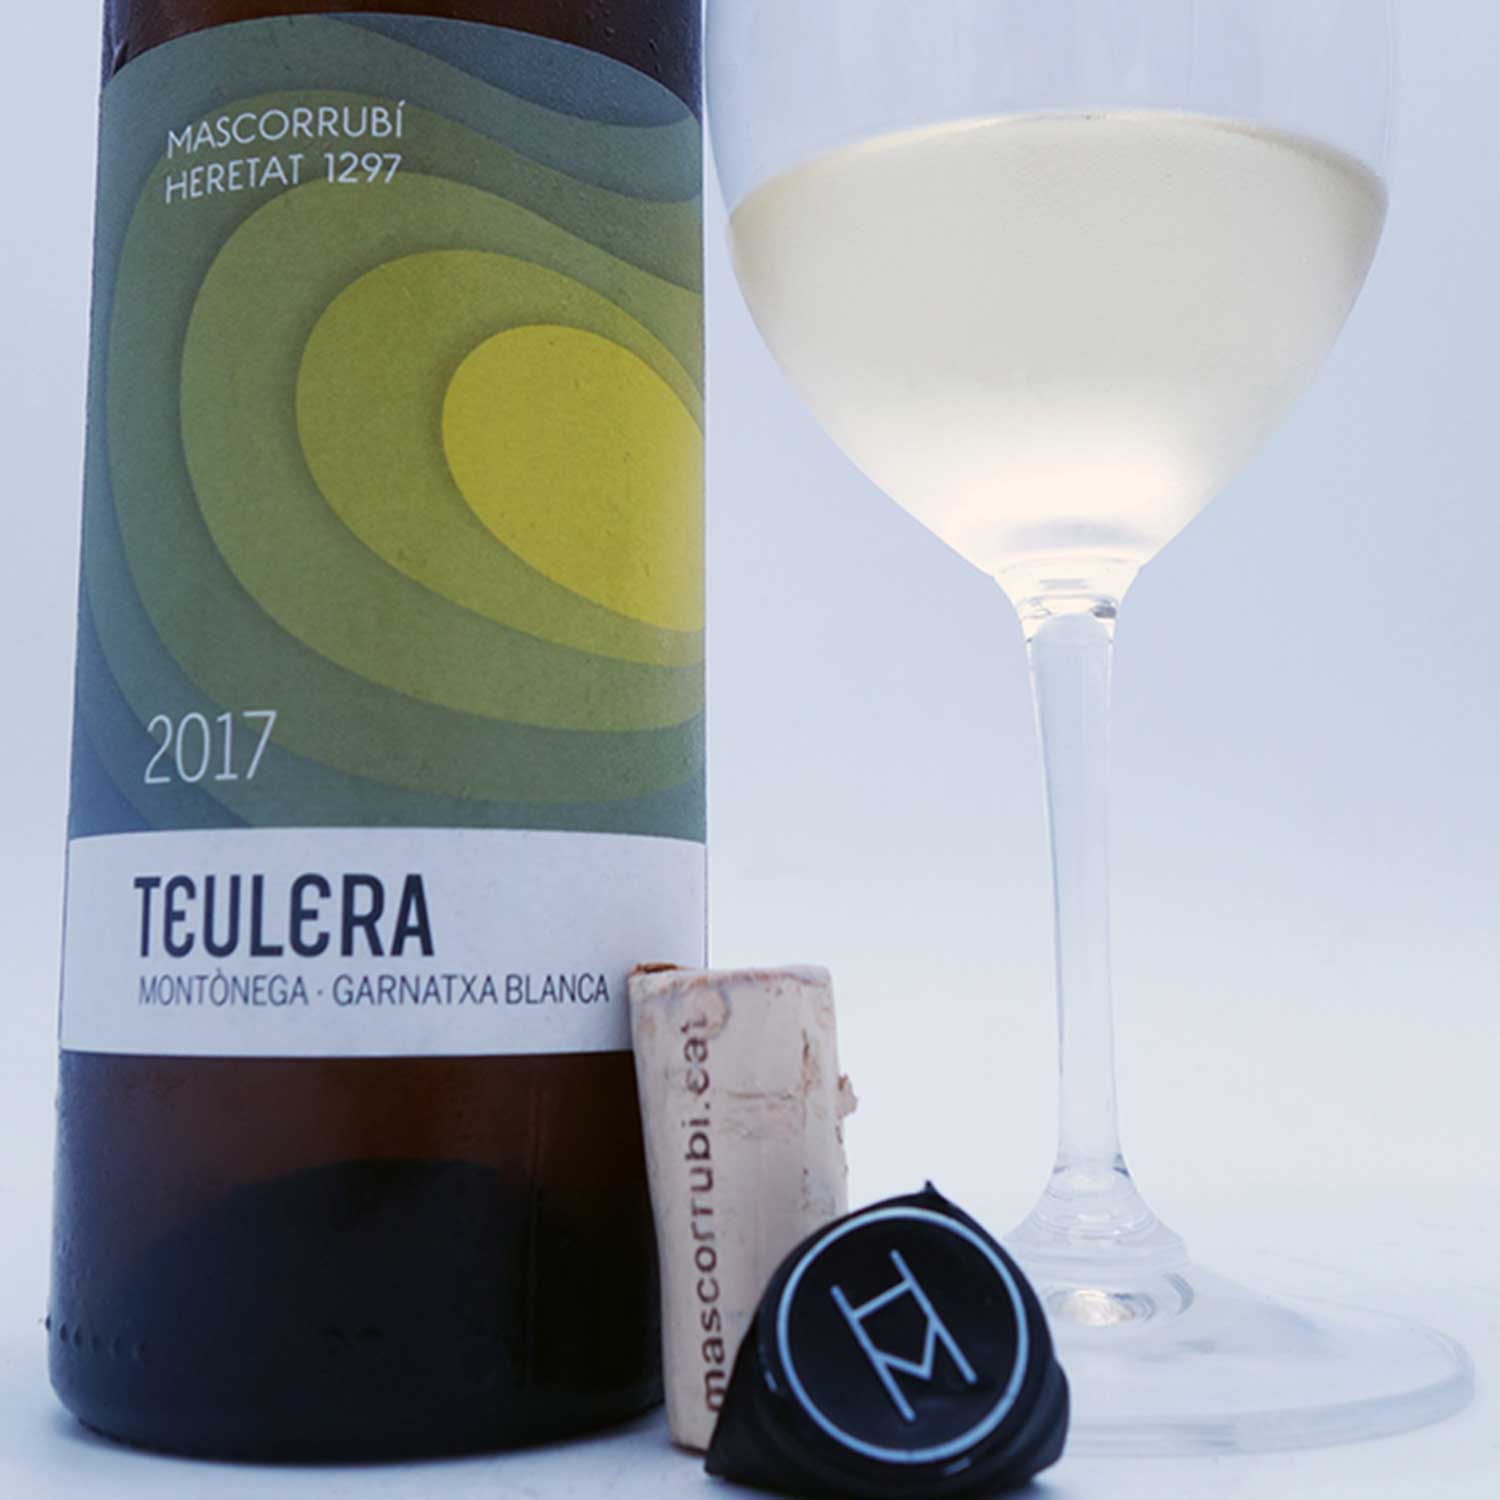 Teulera-Heretat-Mascorrubi-Catalunya-1